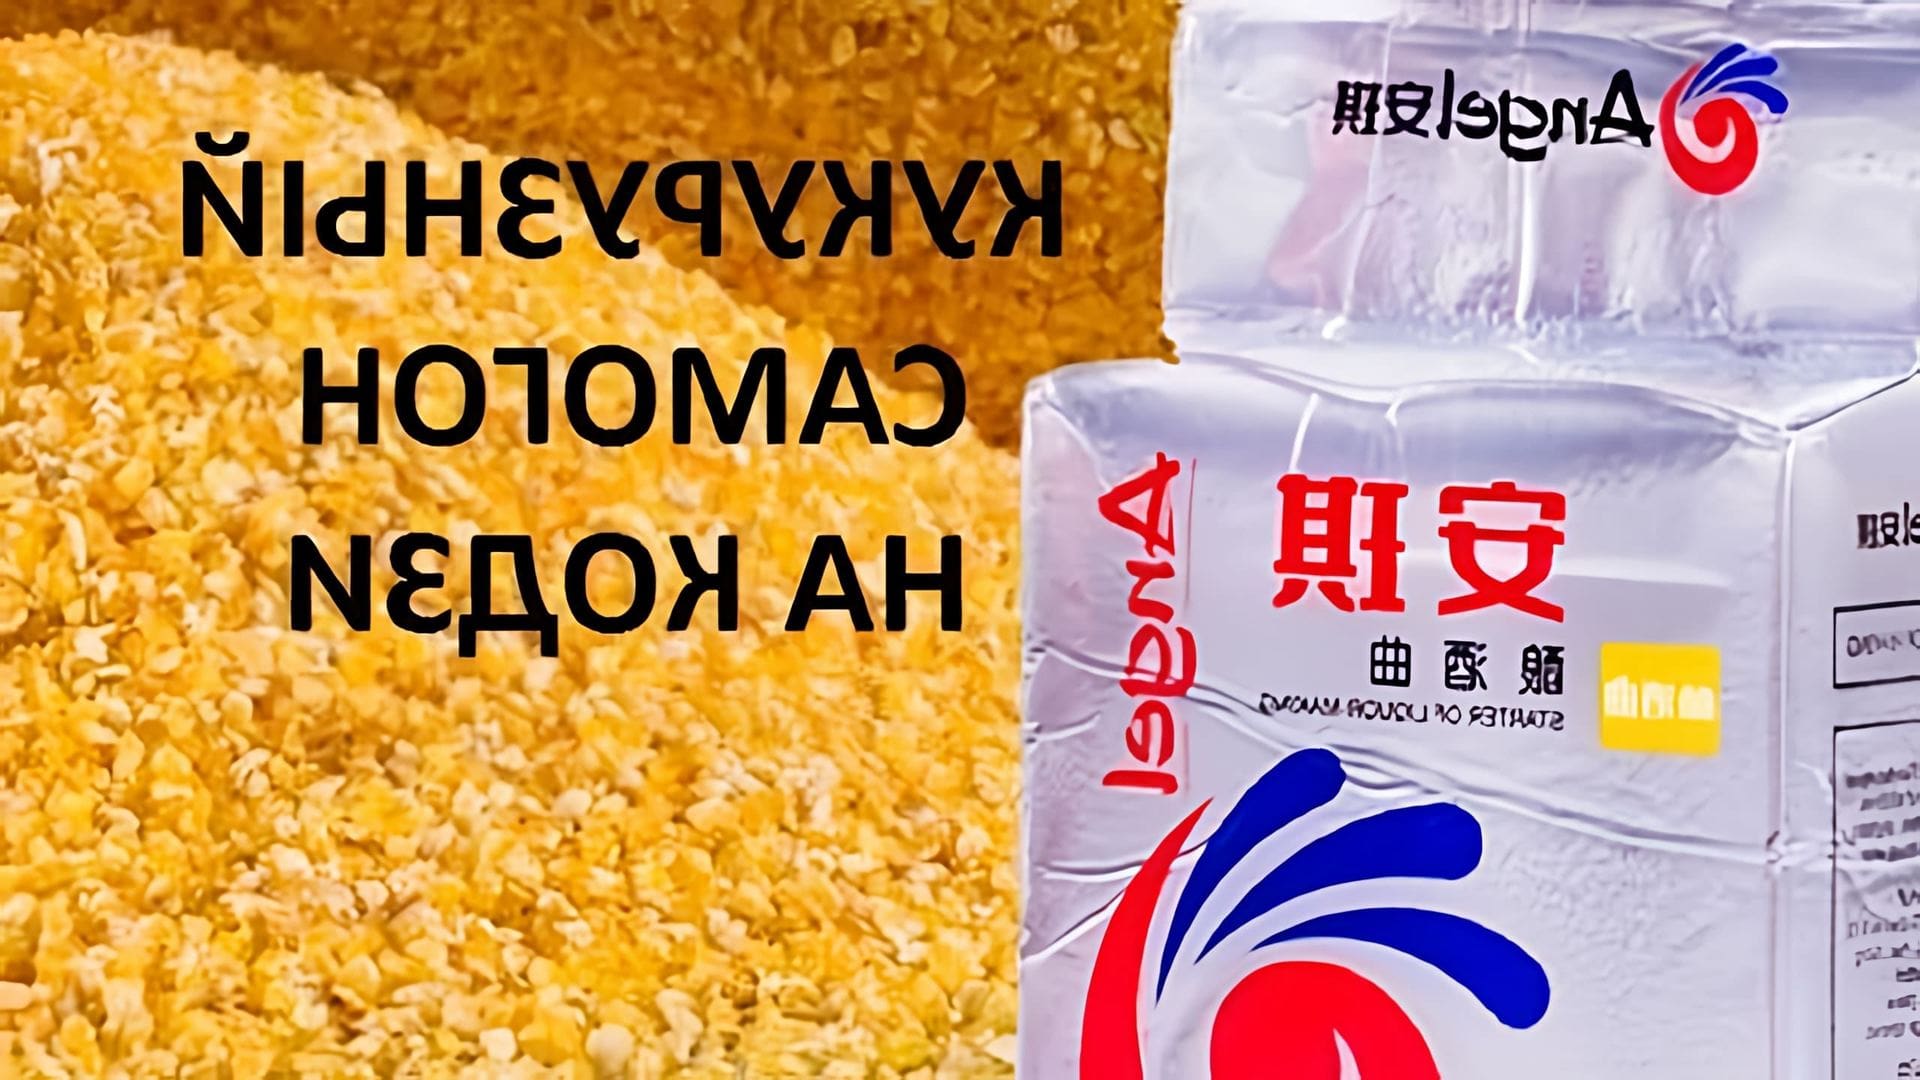 В данном видео демонстрируется процесс приготовления кукурузного самогона с использованием китайских дрожжей кодзи